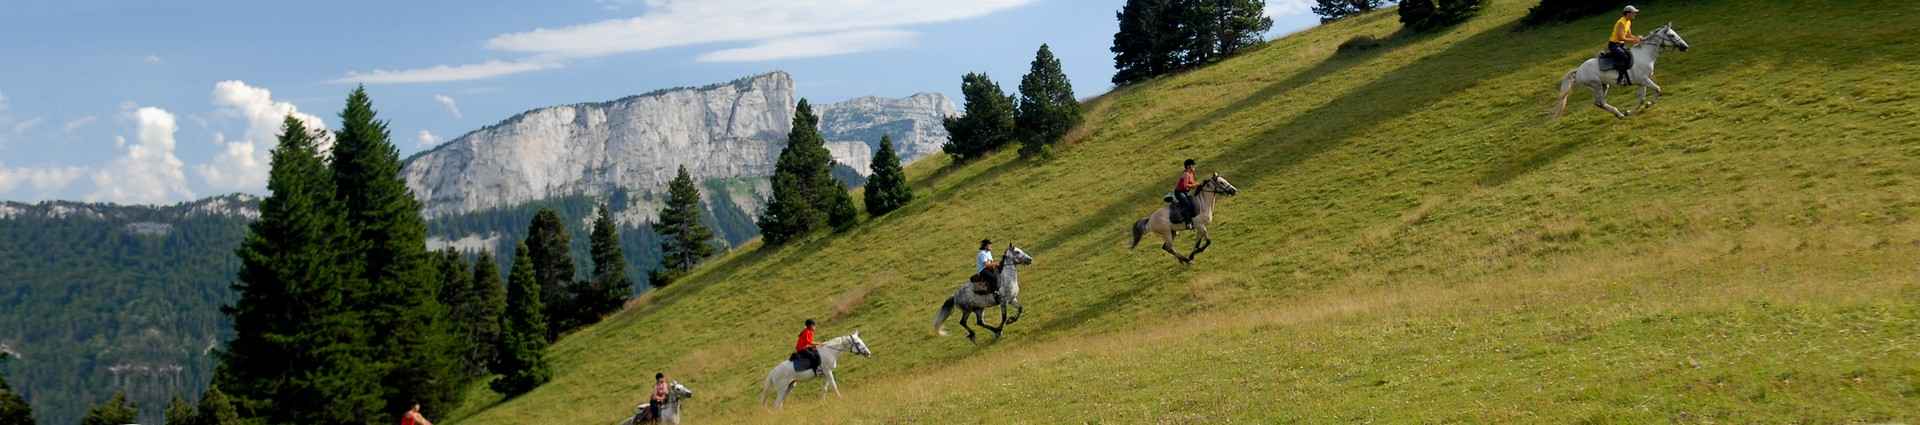 Rando à cheval dans les Alpes